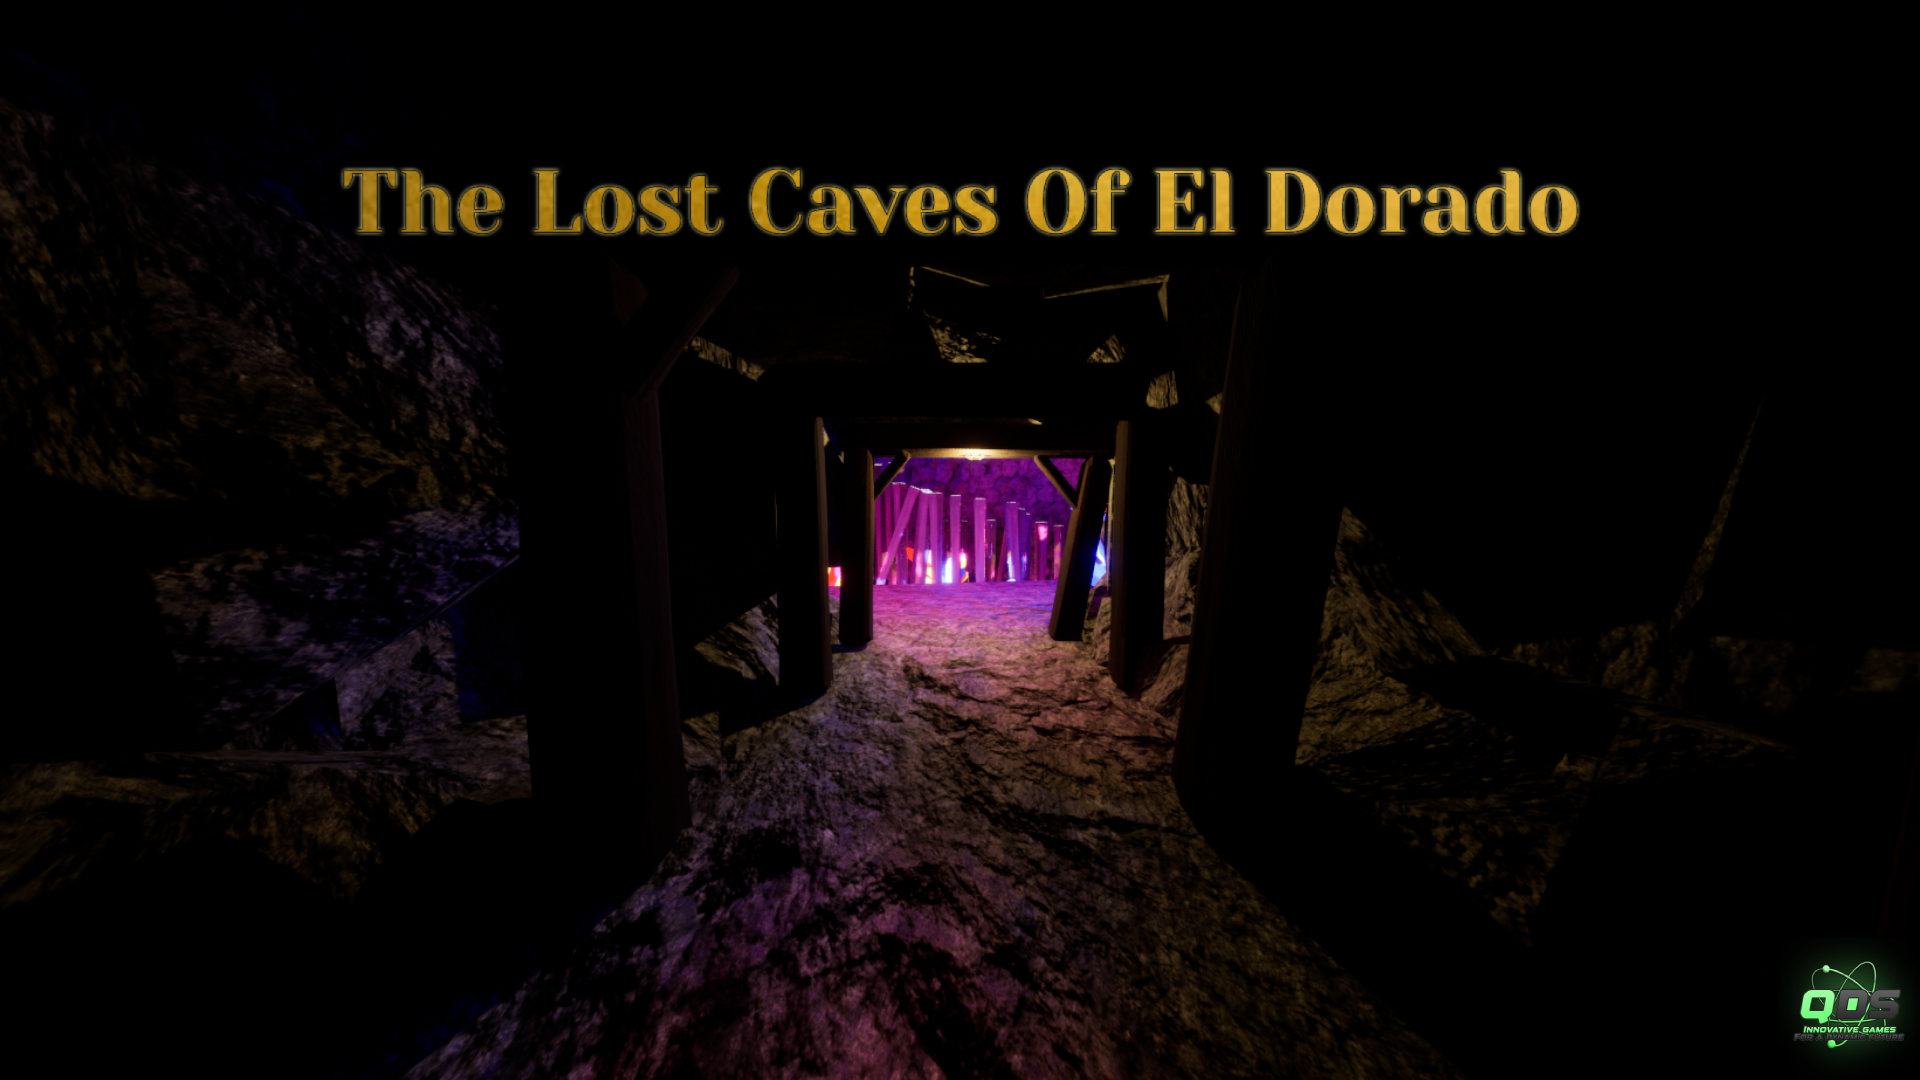 The lost caves of El Dorado